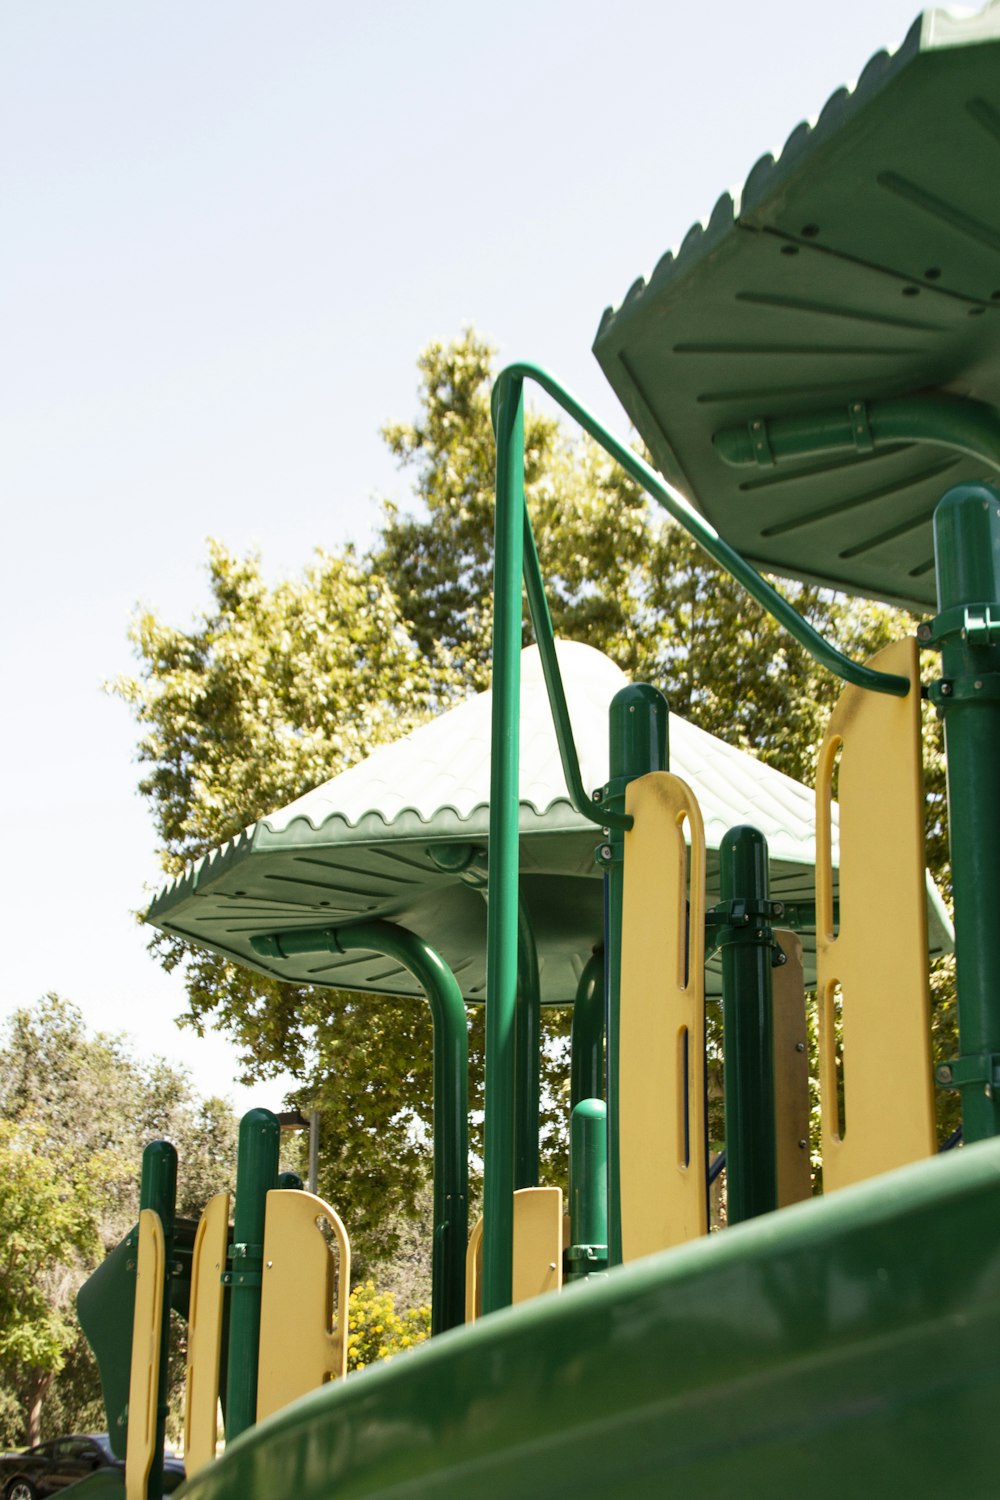 green playground